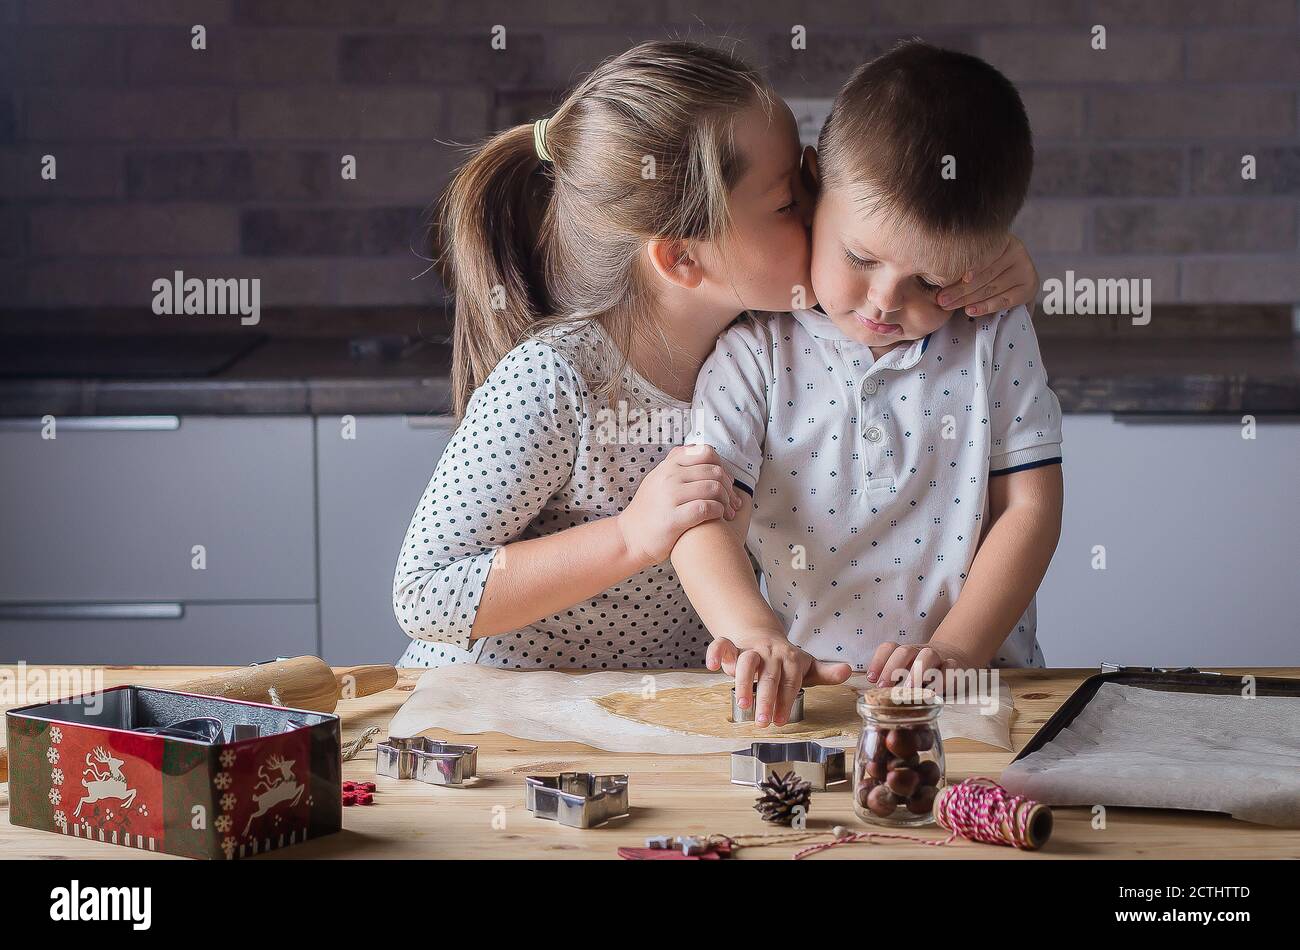 Holiday Sweet Food Konzept. Schwester küsst Bruder während der Herstellung weihnachtskekse. Roher Teig und Ausstecher für die Ferienkekse auf einem Holztisch. Stockfoto